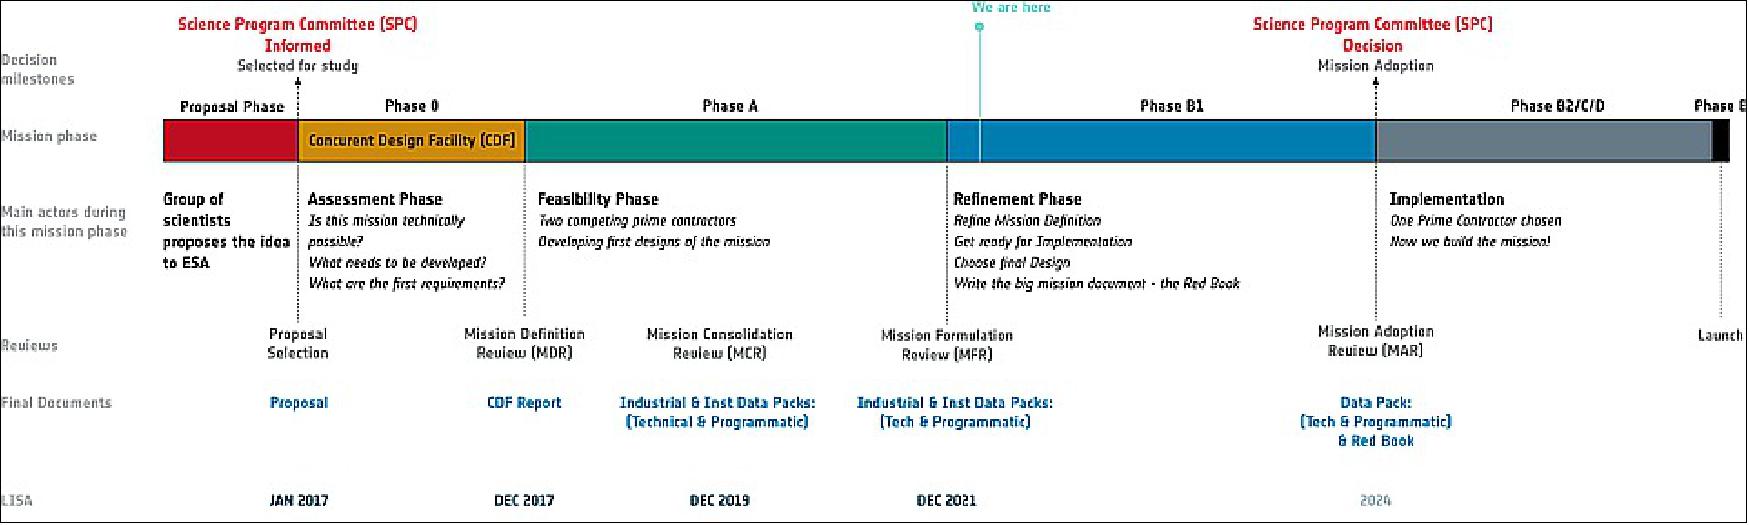 Figure 4: LISA mission timeline (image credit: ESA)